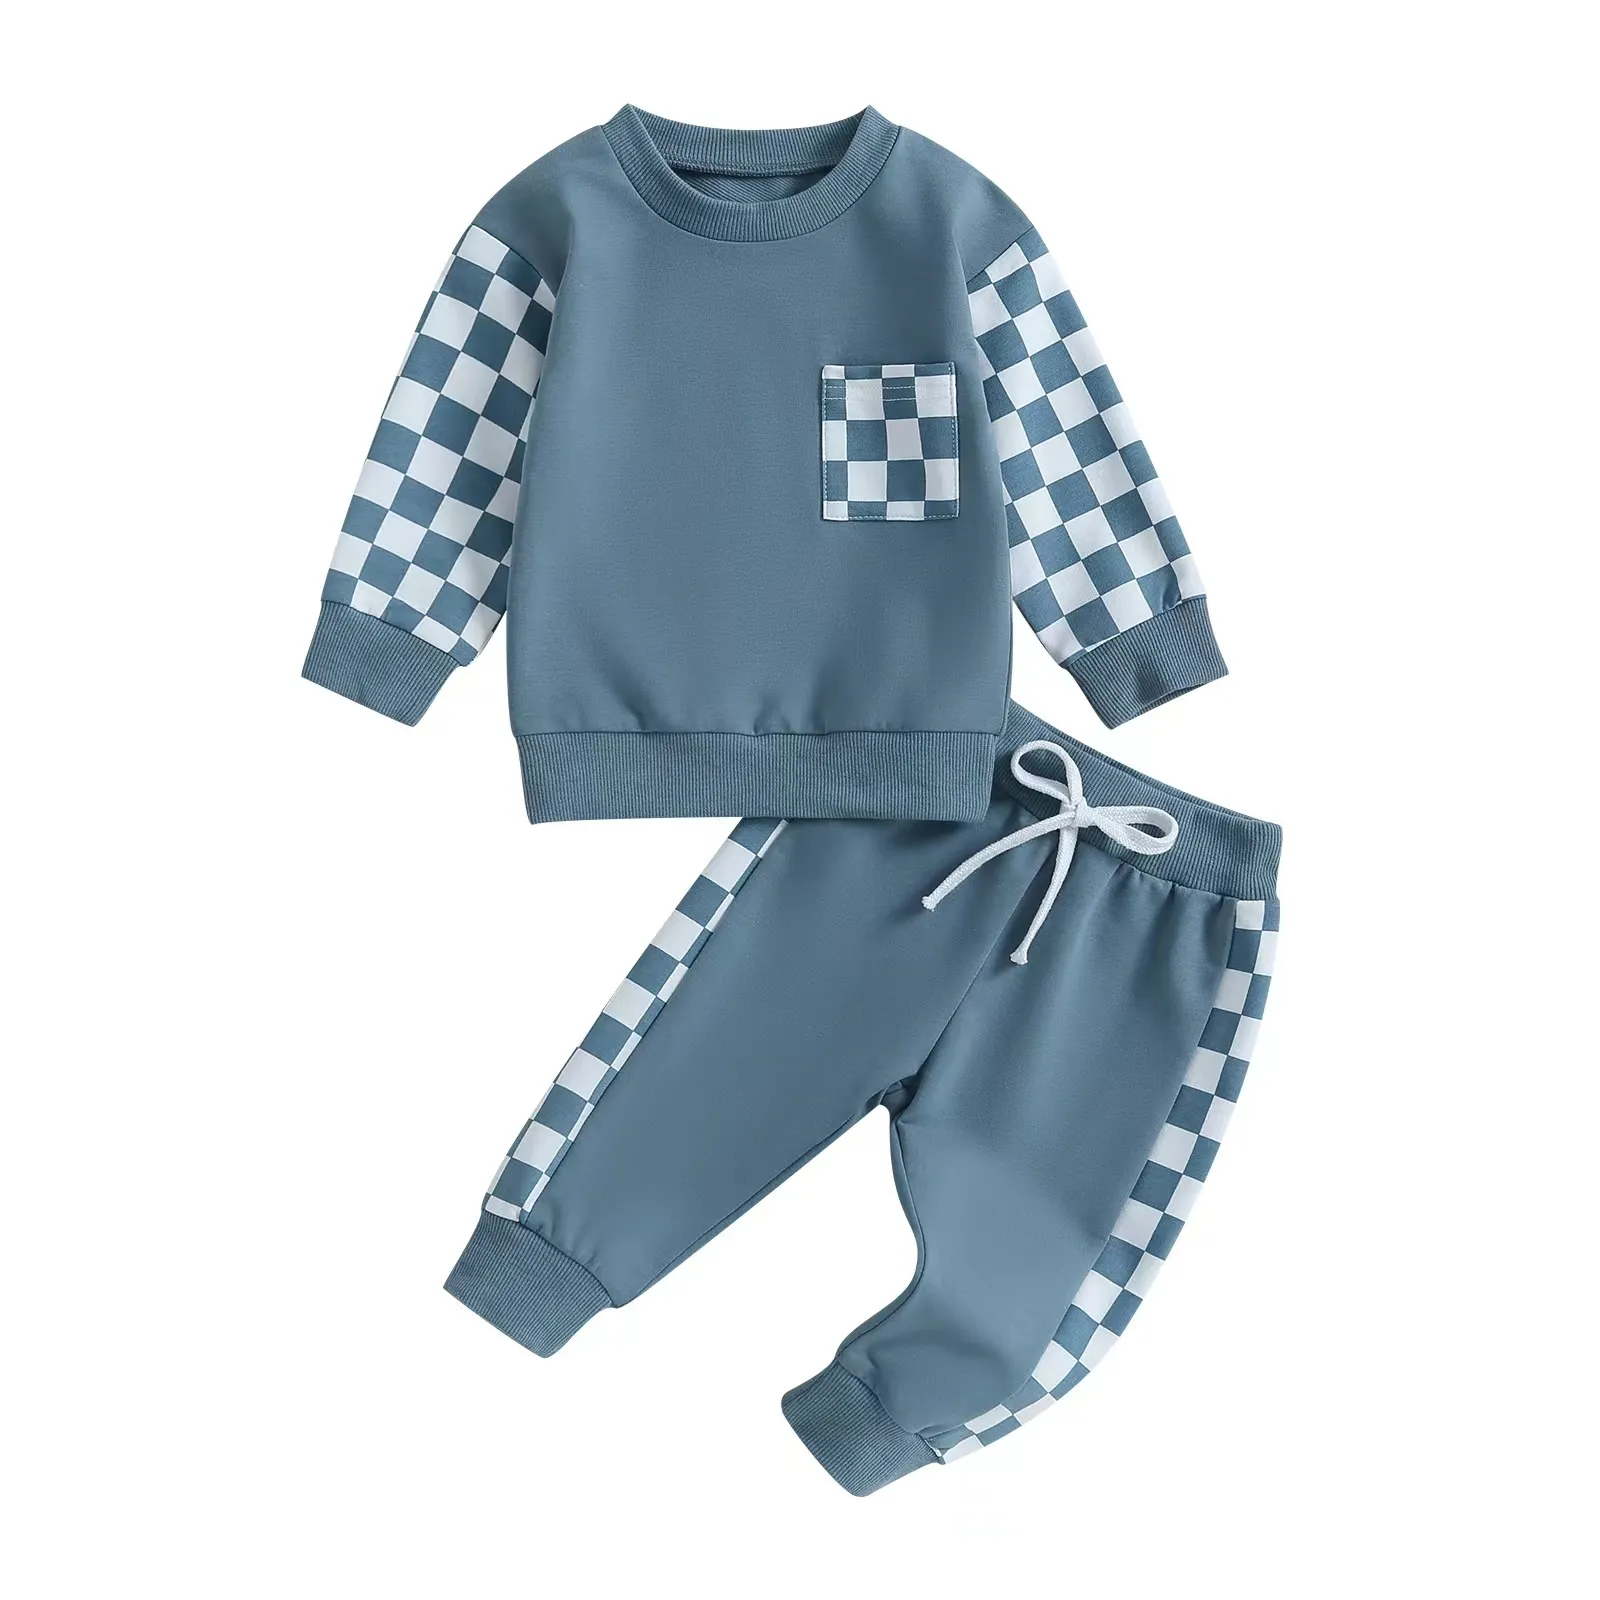 Schlussverkauf Frühjahr Junge kariert Stil Farbblock Sweatshirt-Sets 2-teiliges Set Kindermode-Sets